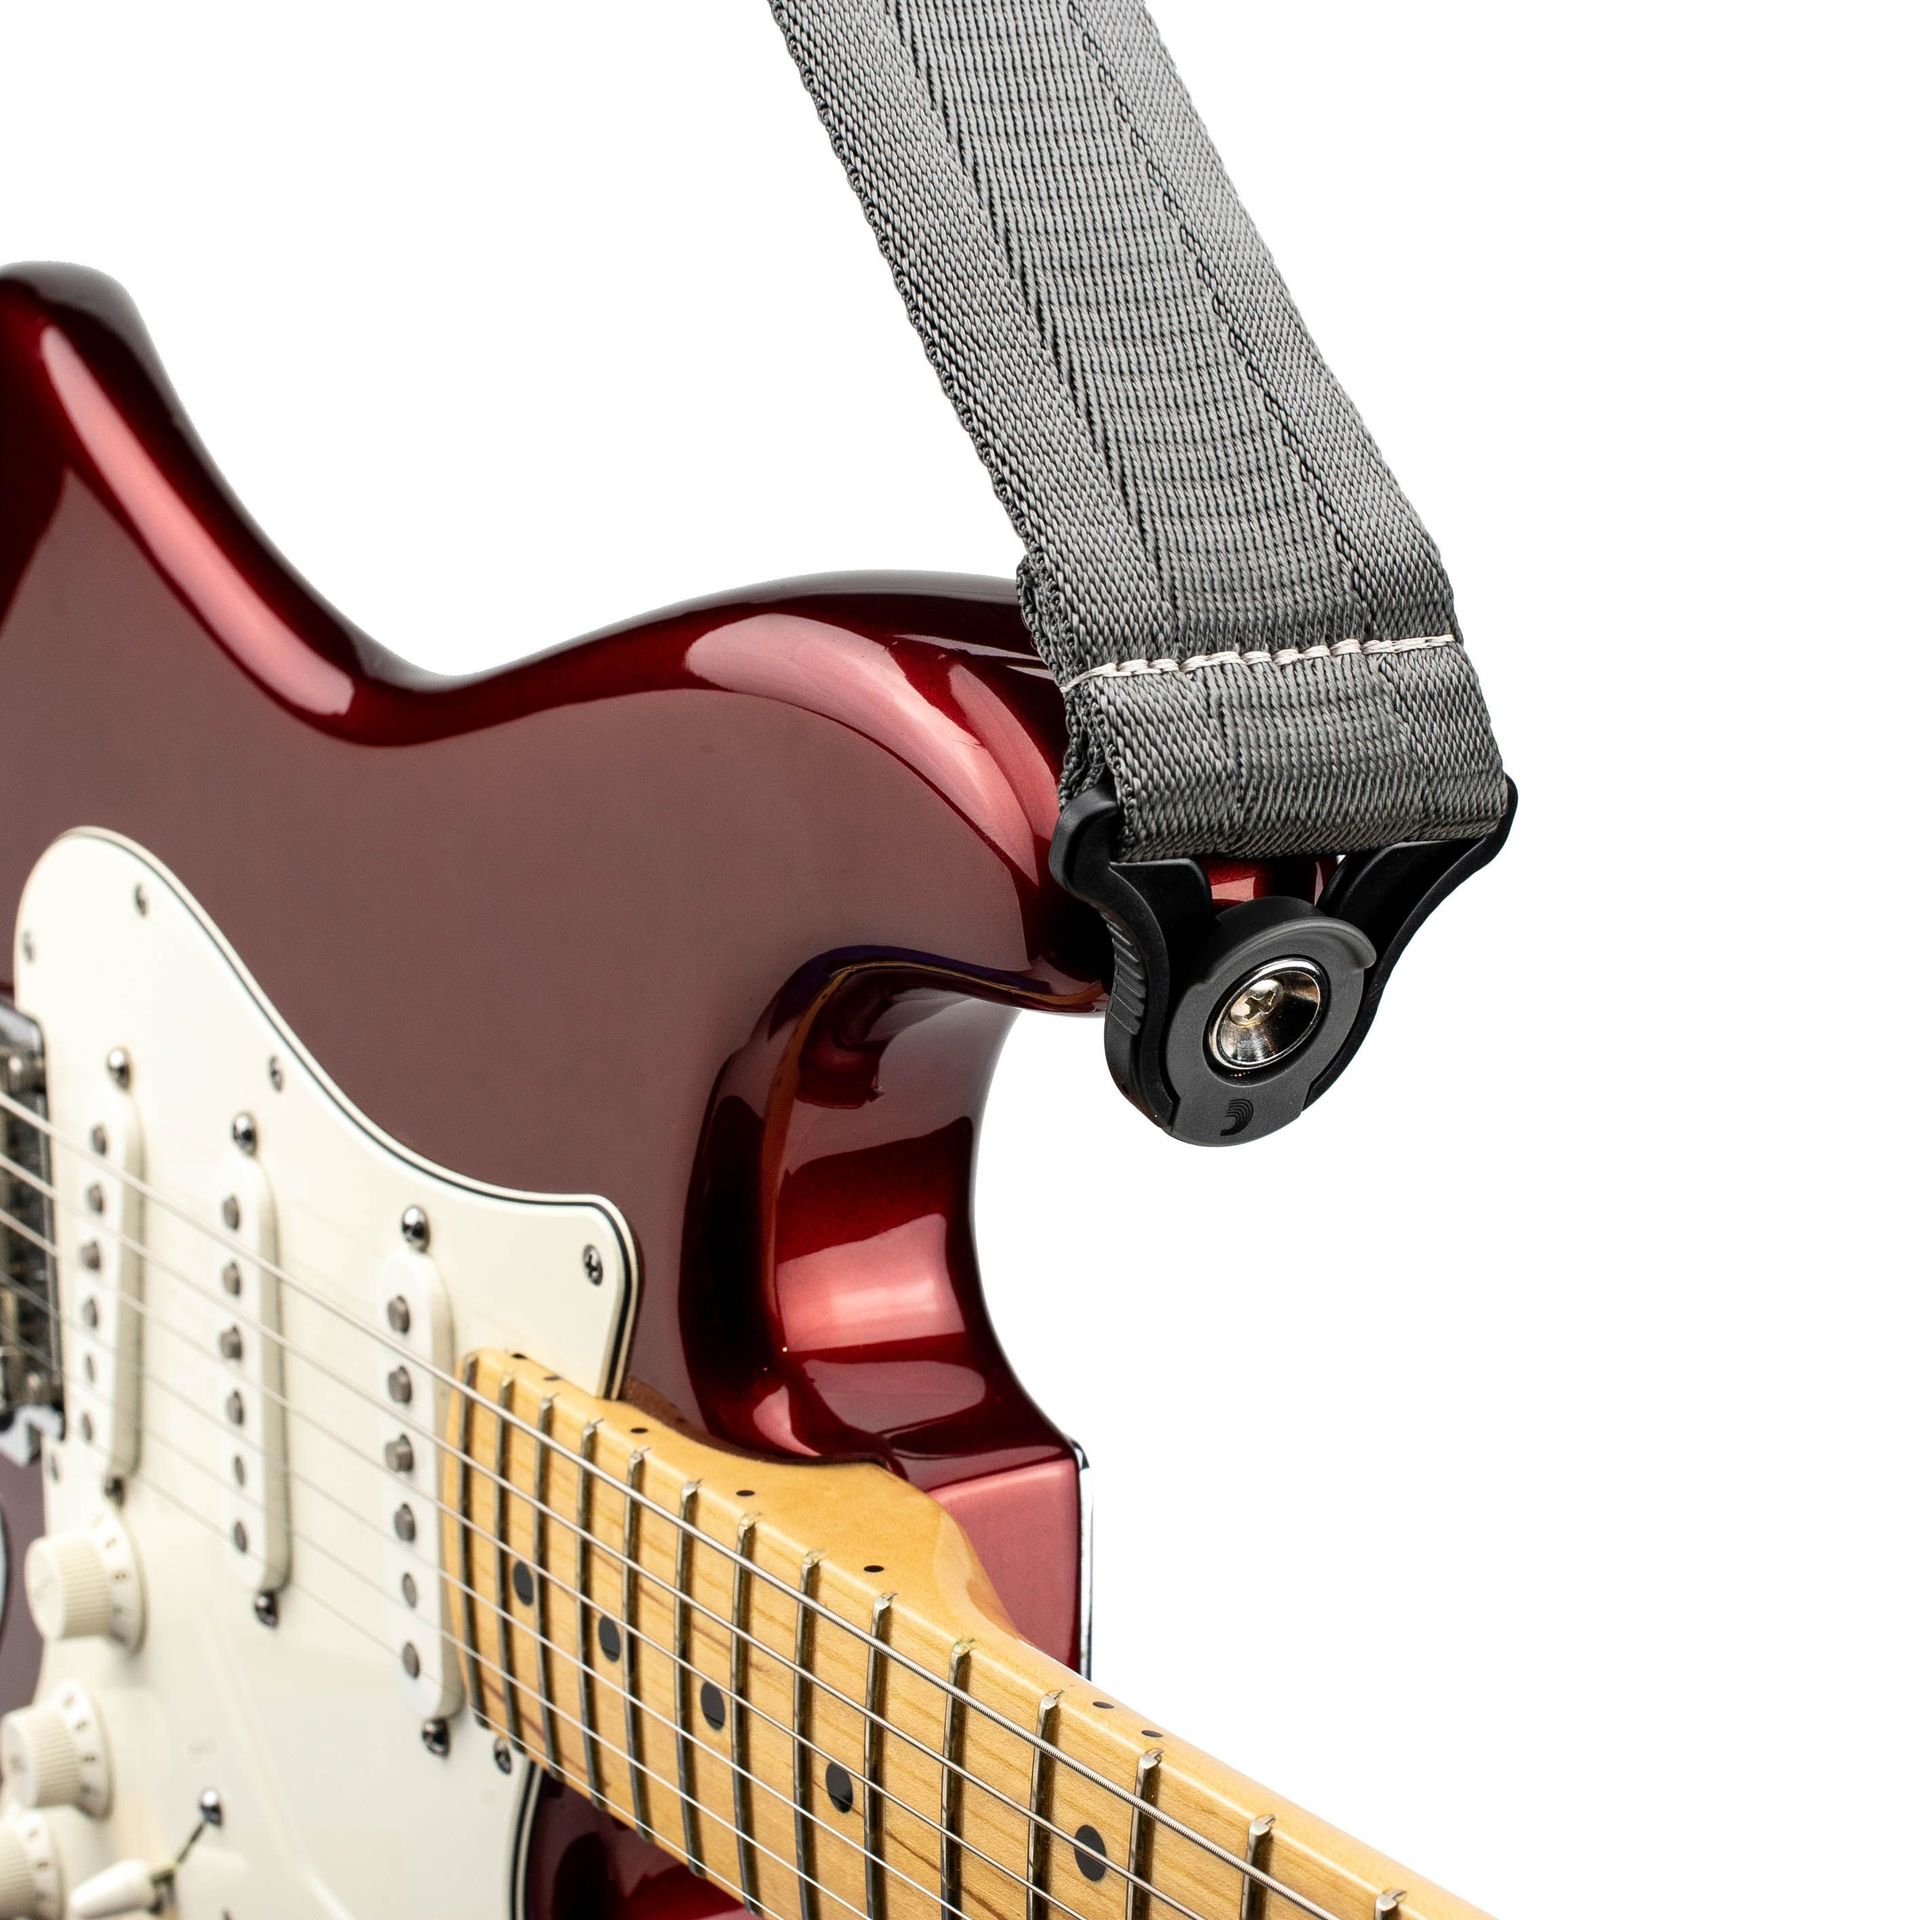 D’Addario Auto Lock Guitar Strap Metal Grey 50BAL09